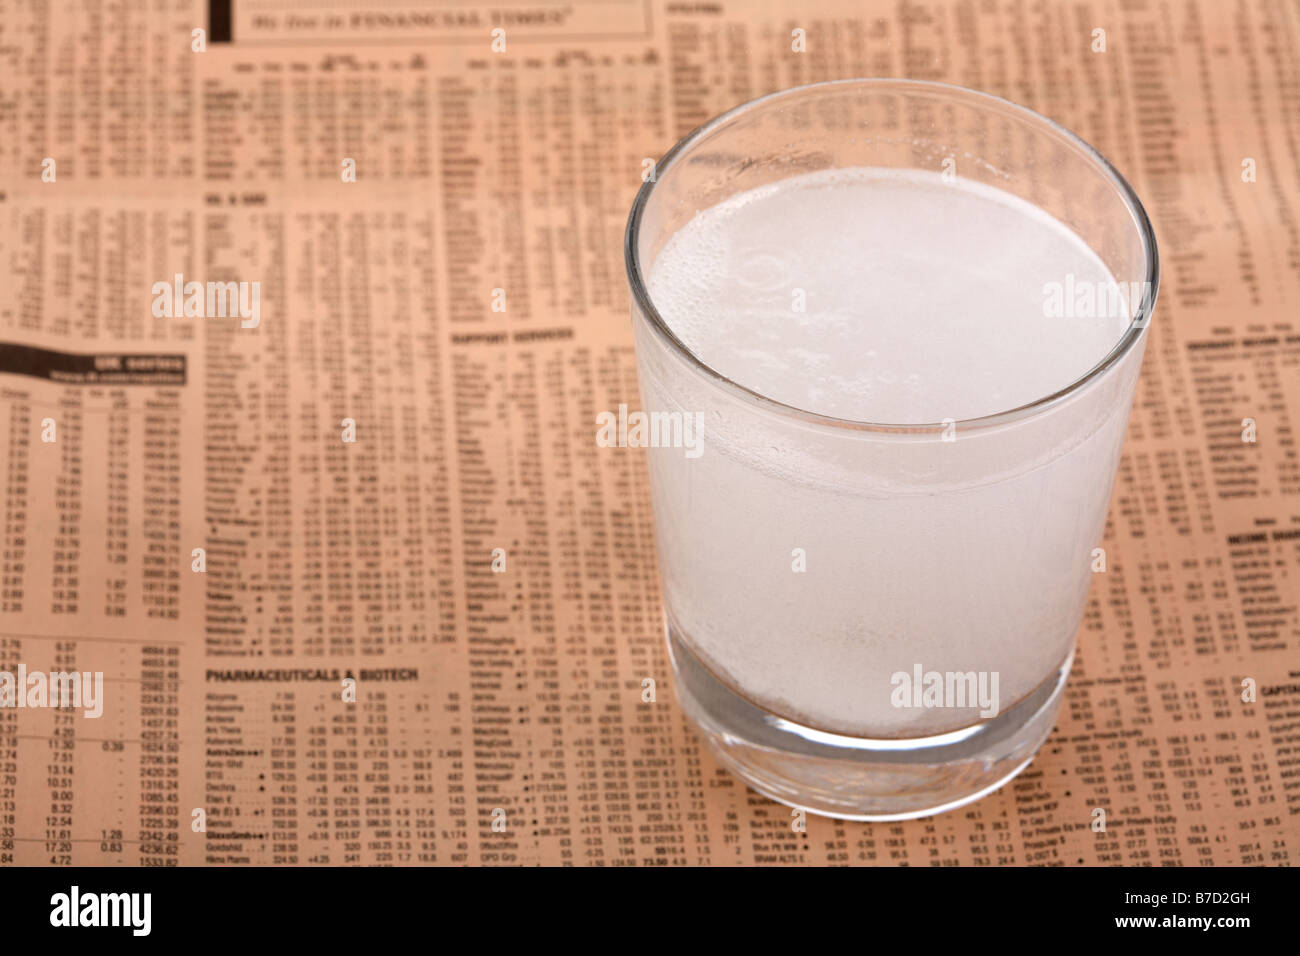 Due solubili di paracetamolo aspirina compresse in un bicchiere di acqua su una copia del Financial Times Foto Stock